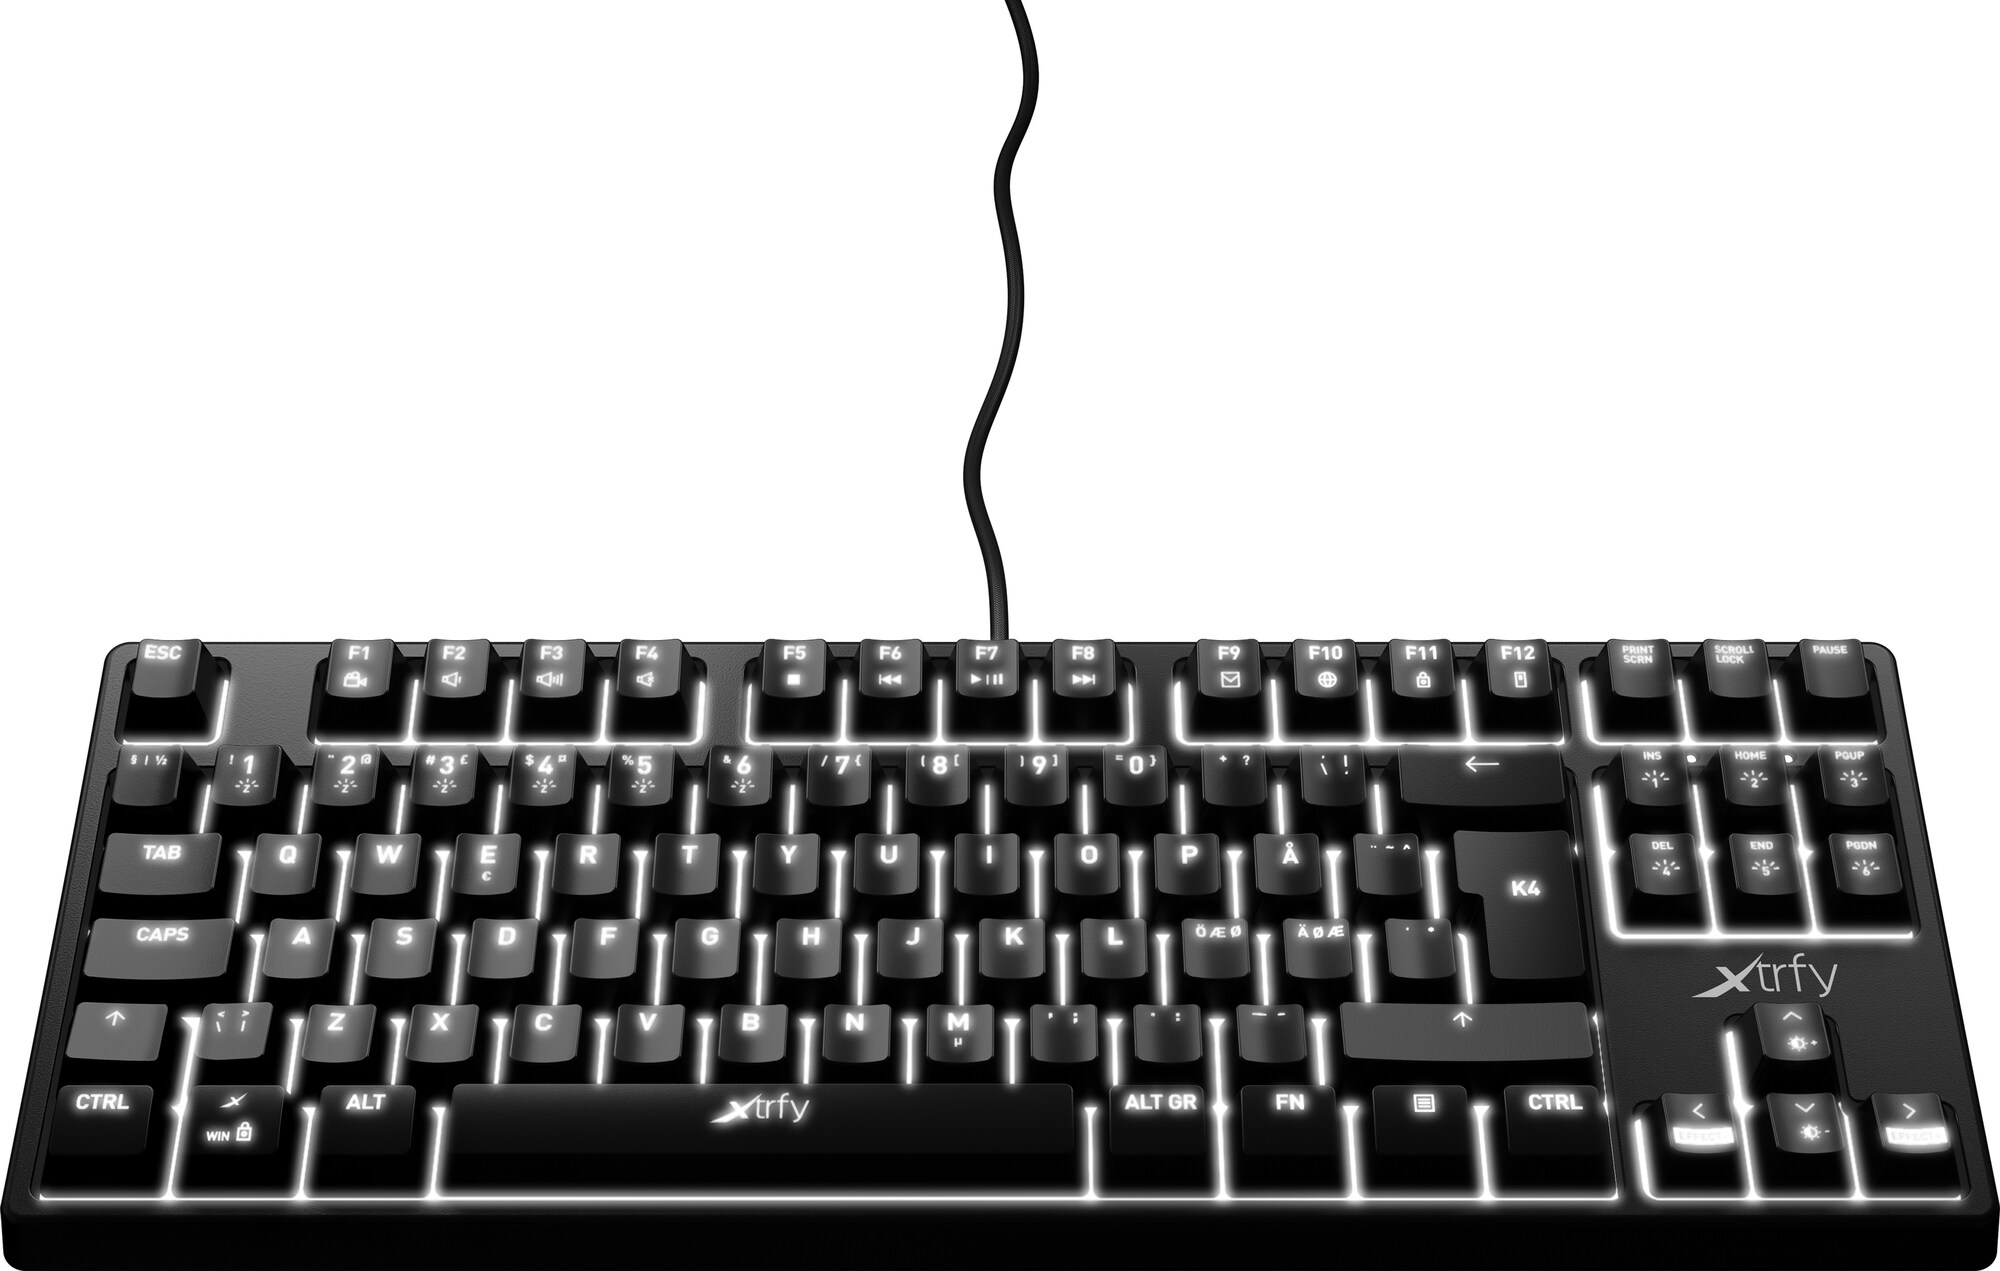 Xtrfy K4 LITE tenkeyless mekanisk tastatur - Elkjøp